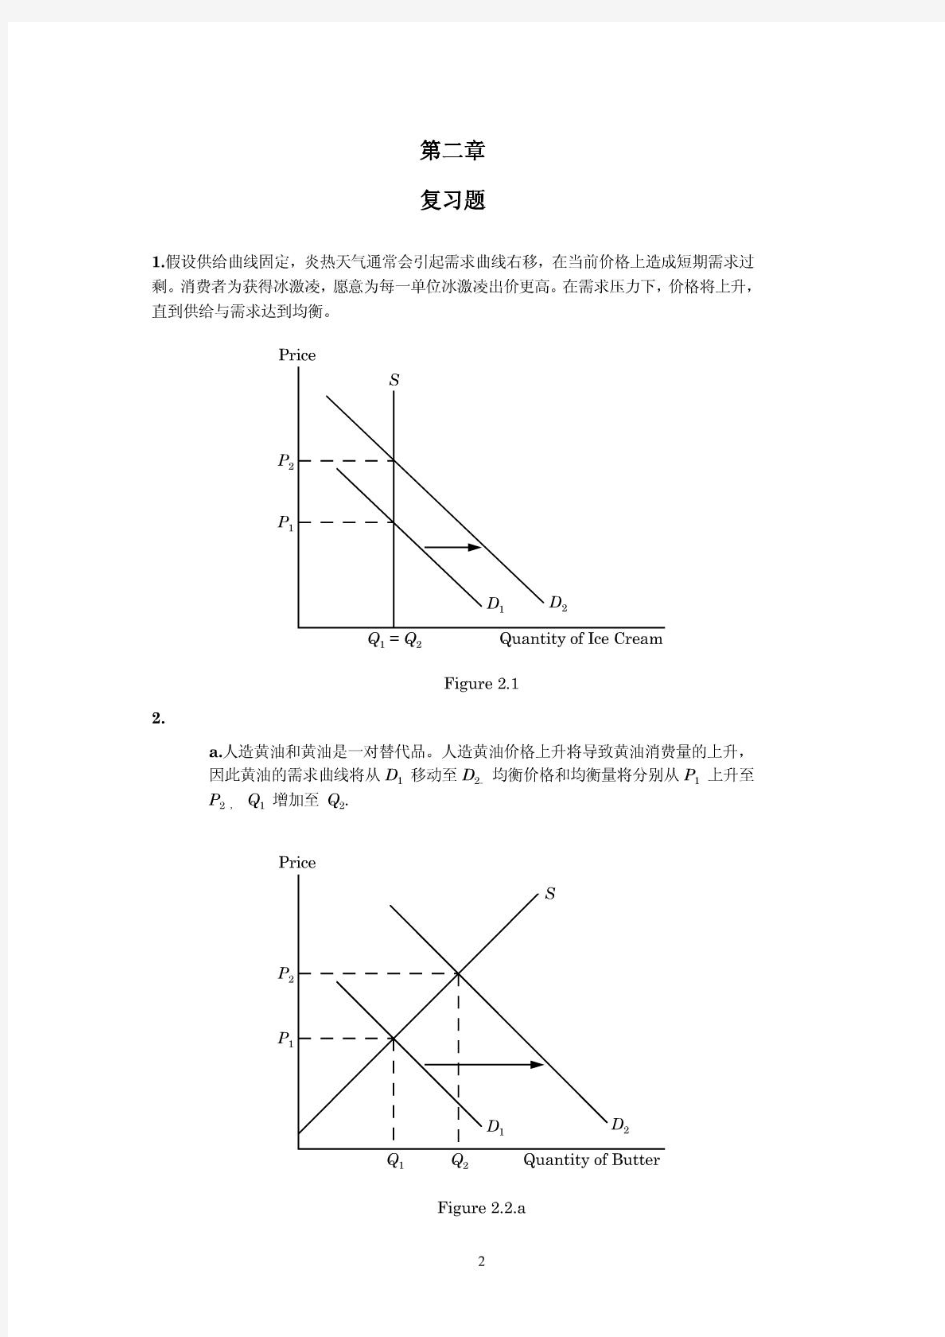 平狄克微观经济学课后习题答案(中文)